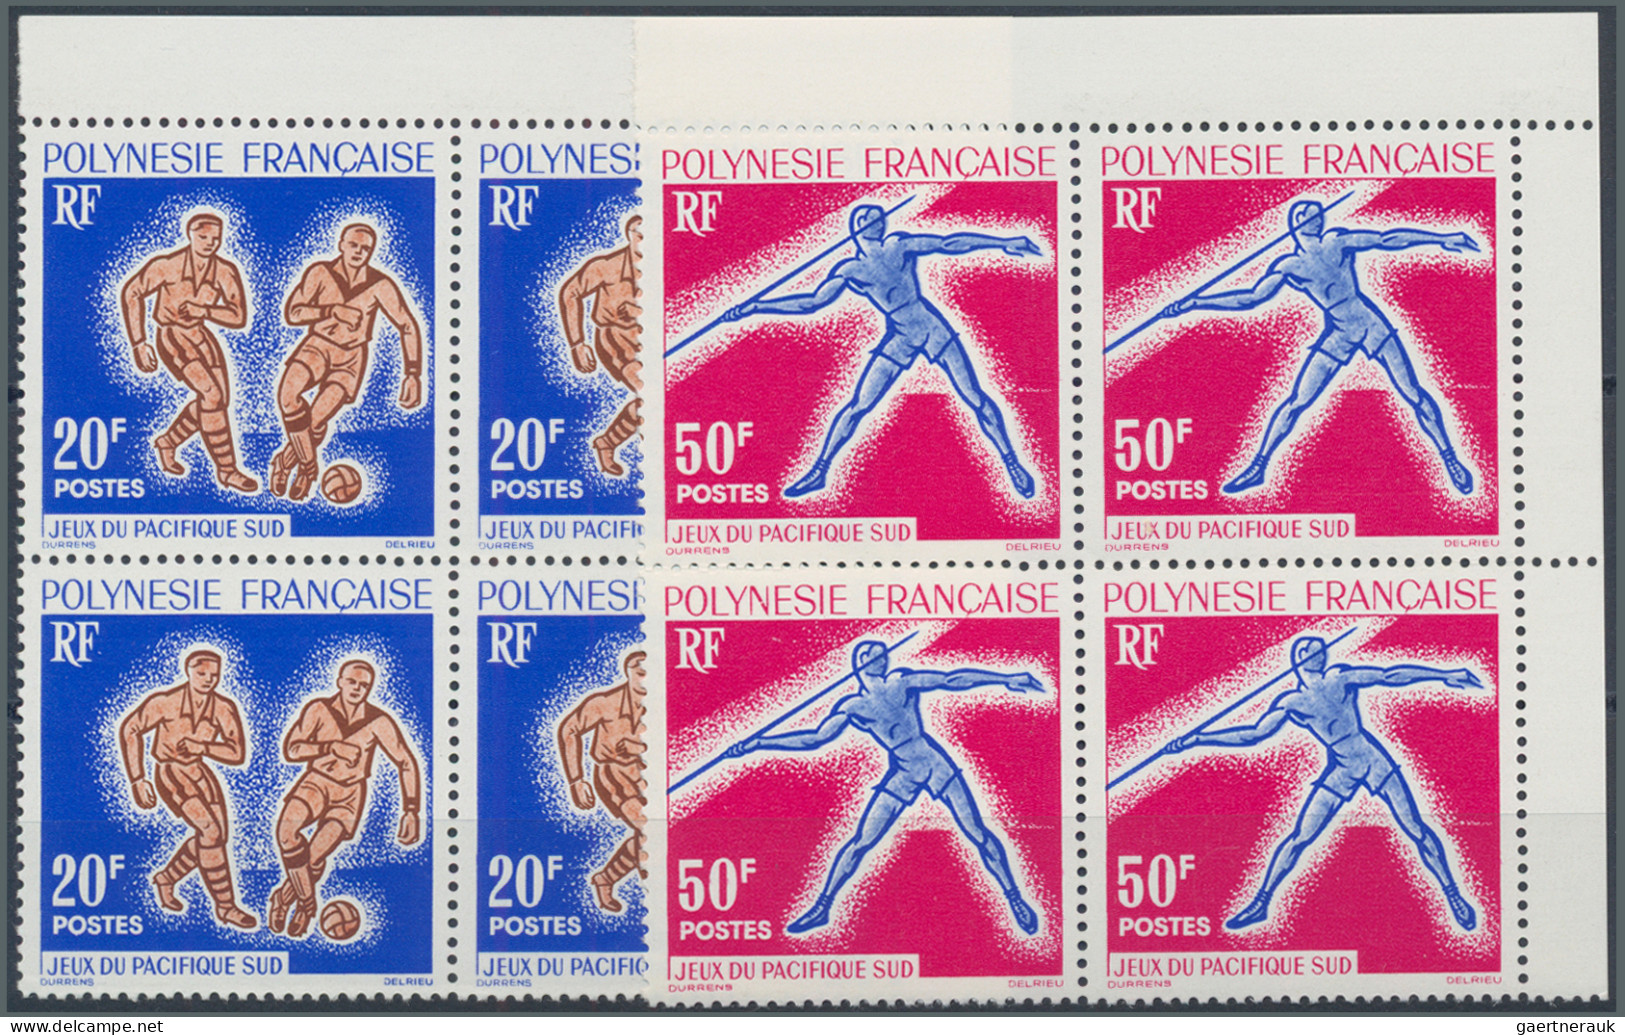 French Polynesia: 1962/1971, kleine Sammlung von auf Auktionen ersteigerten post